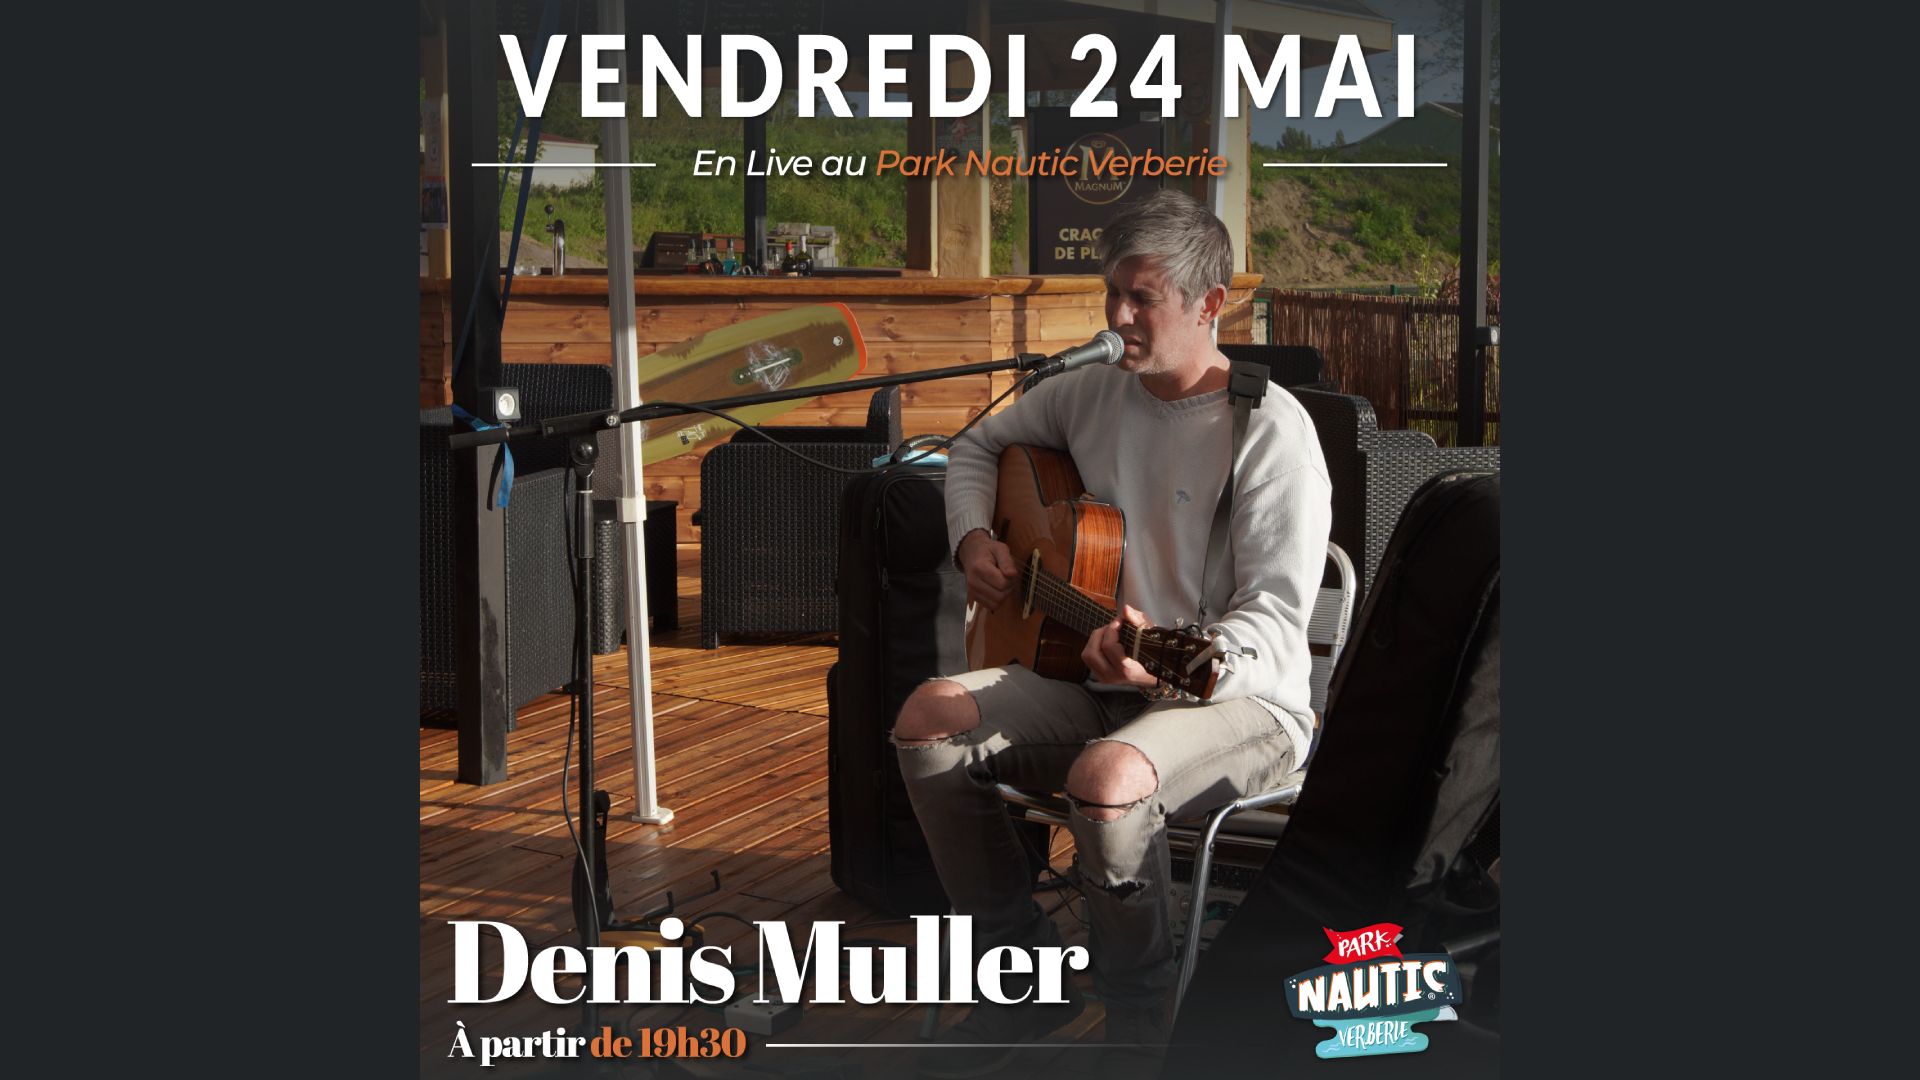 Soirée musicale avec Denis Muller